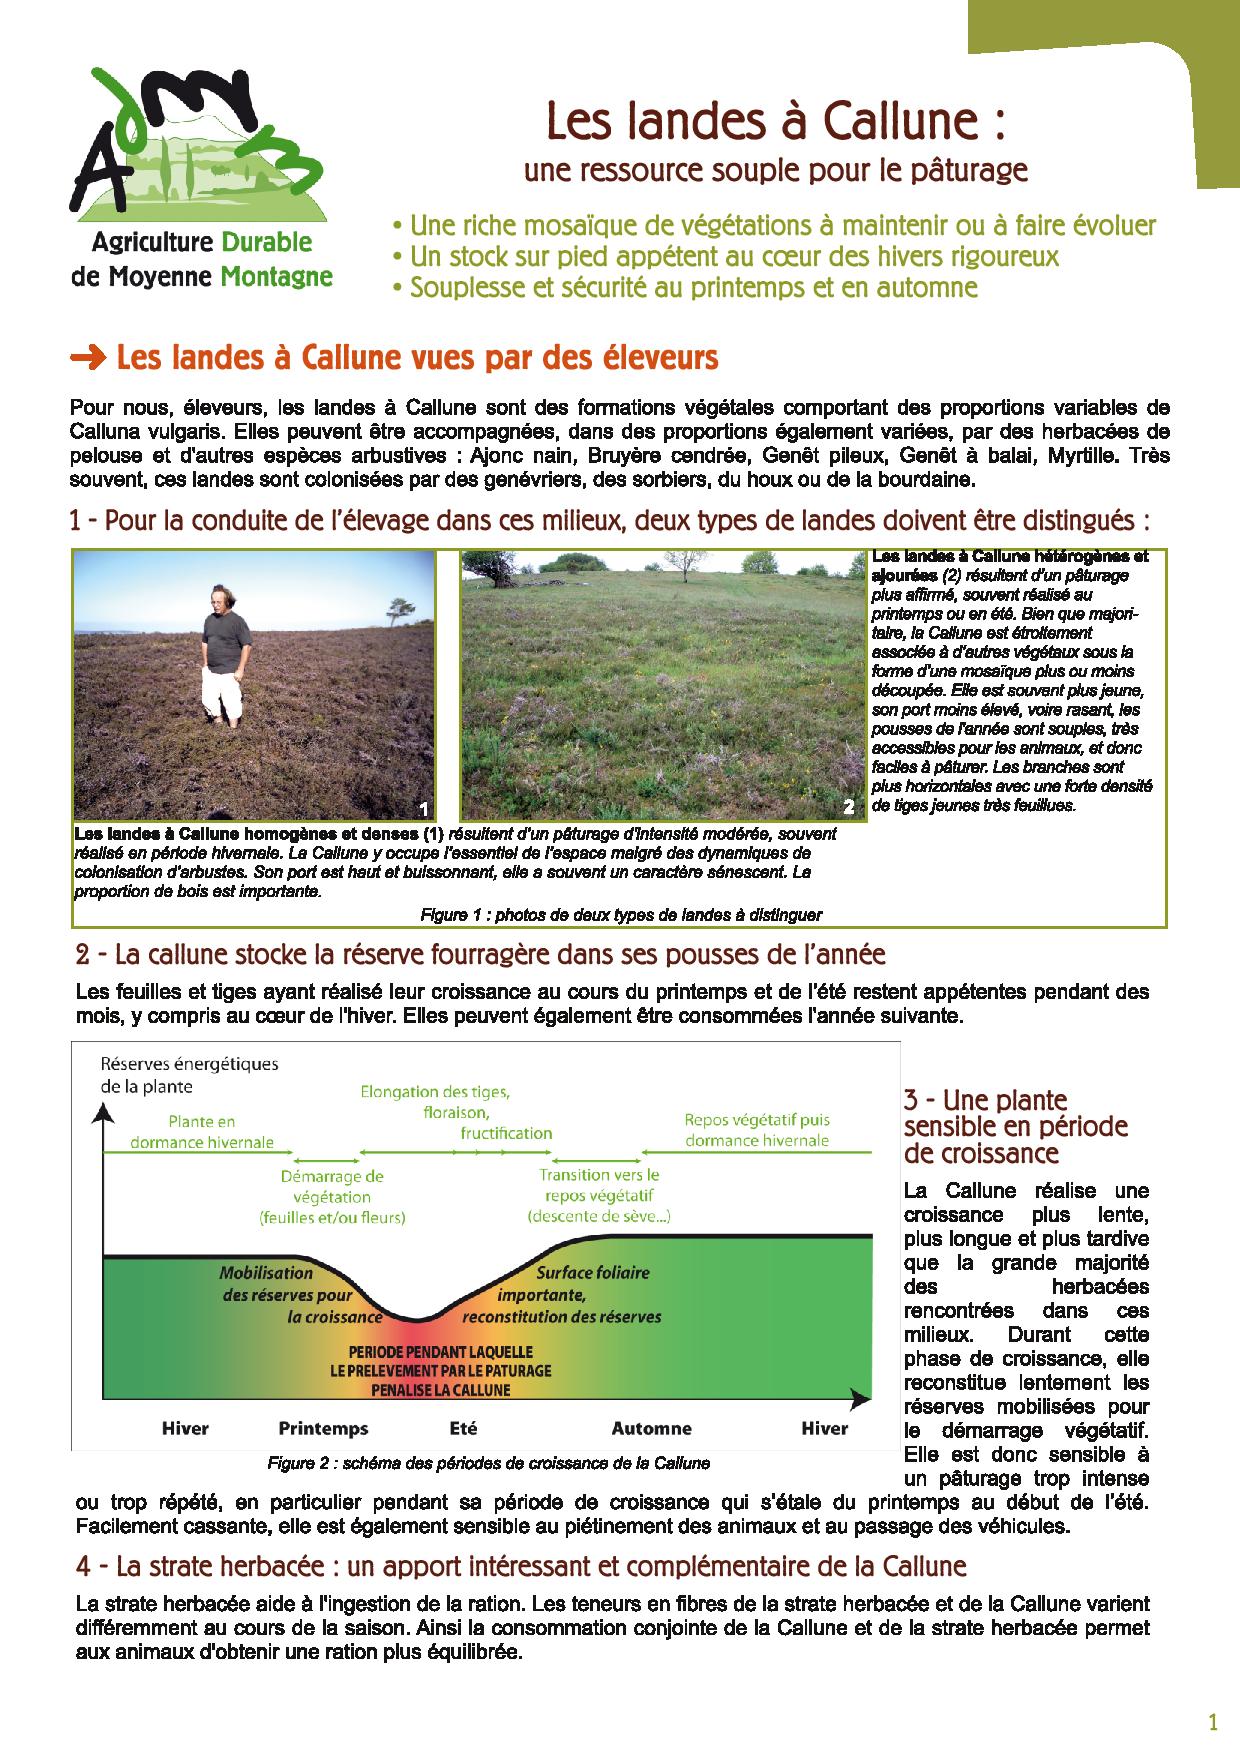 Les landes a Callune une ressource souple pour le paturage avril 2015 page 001